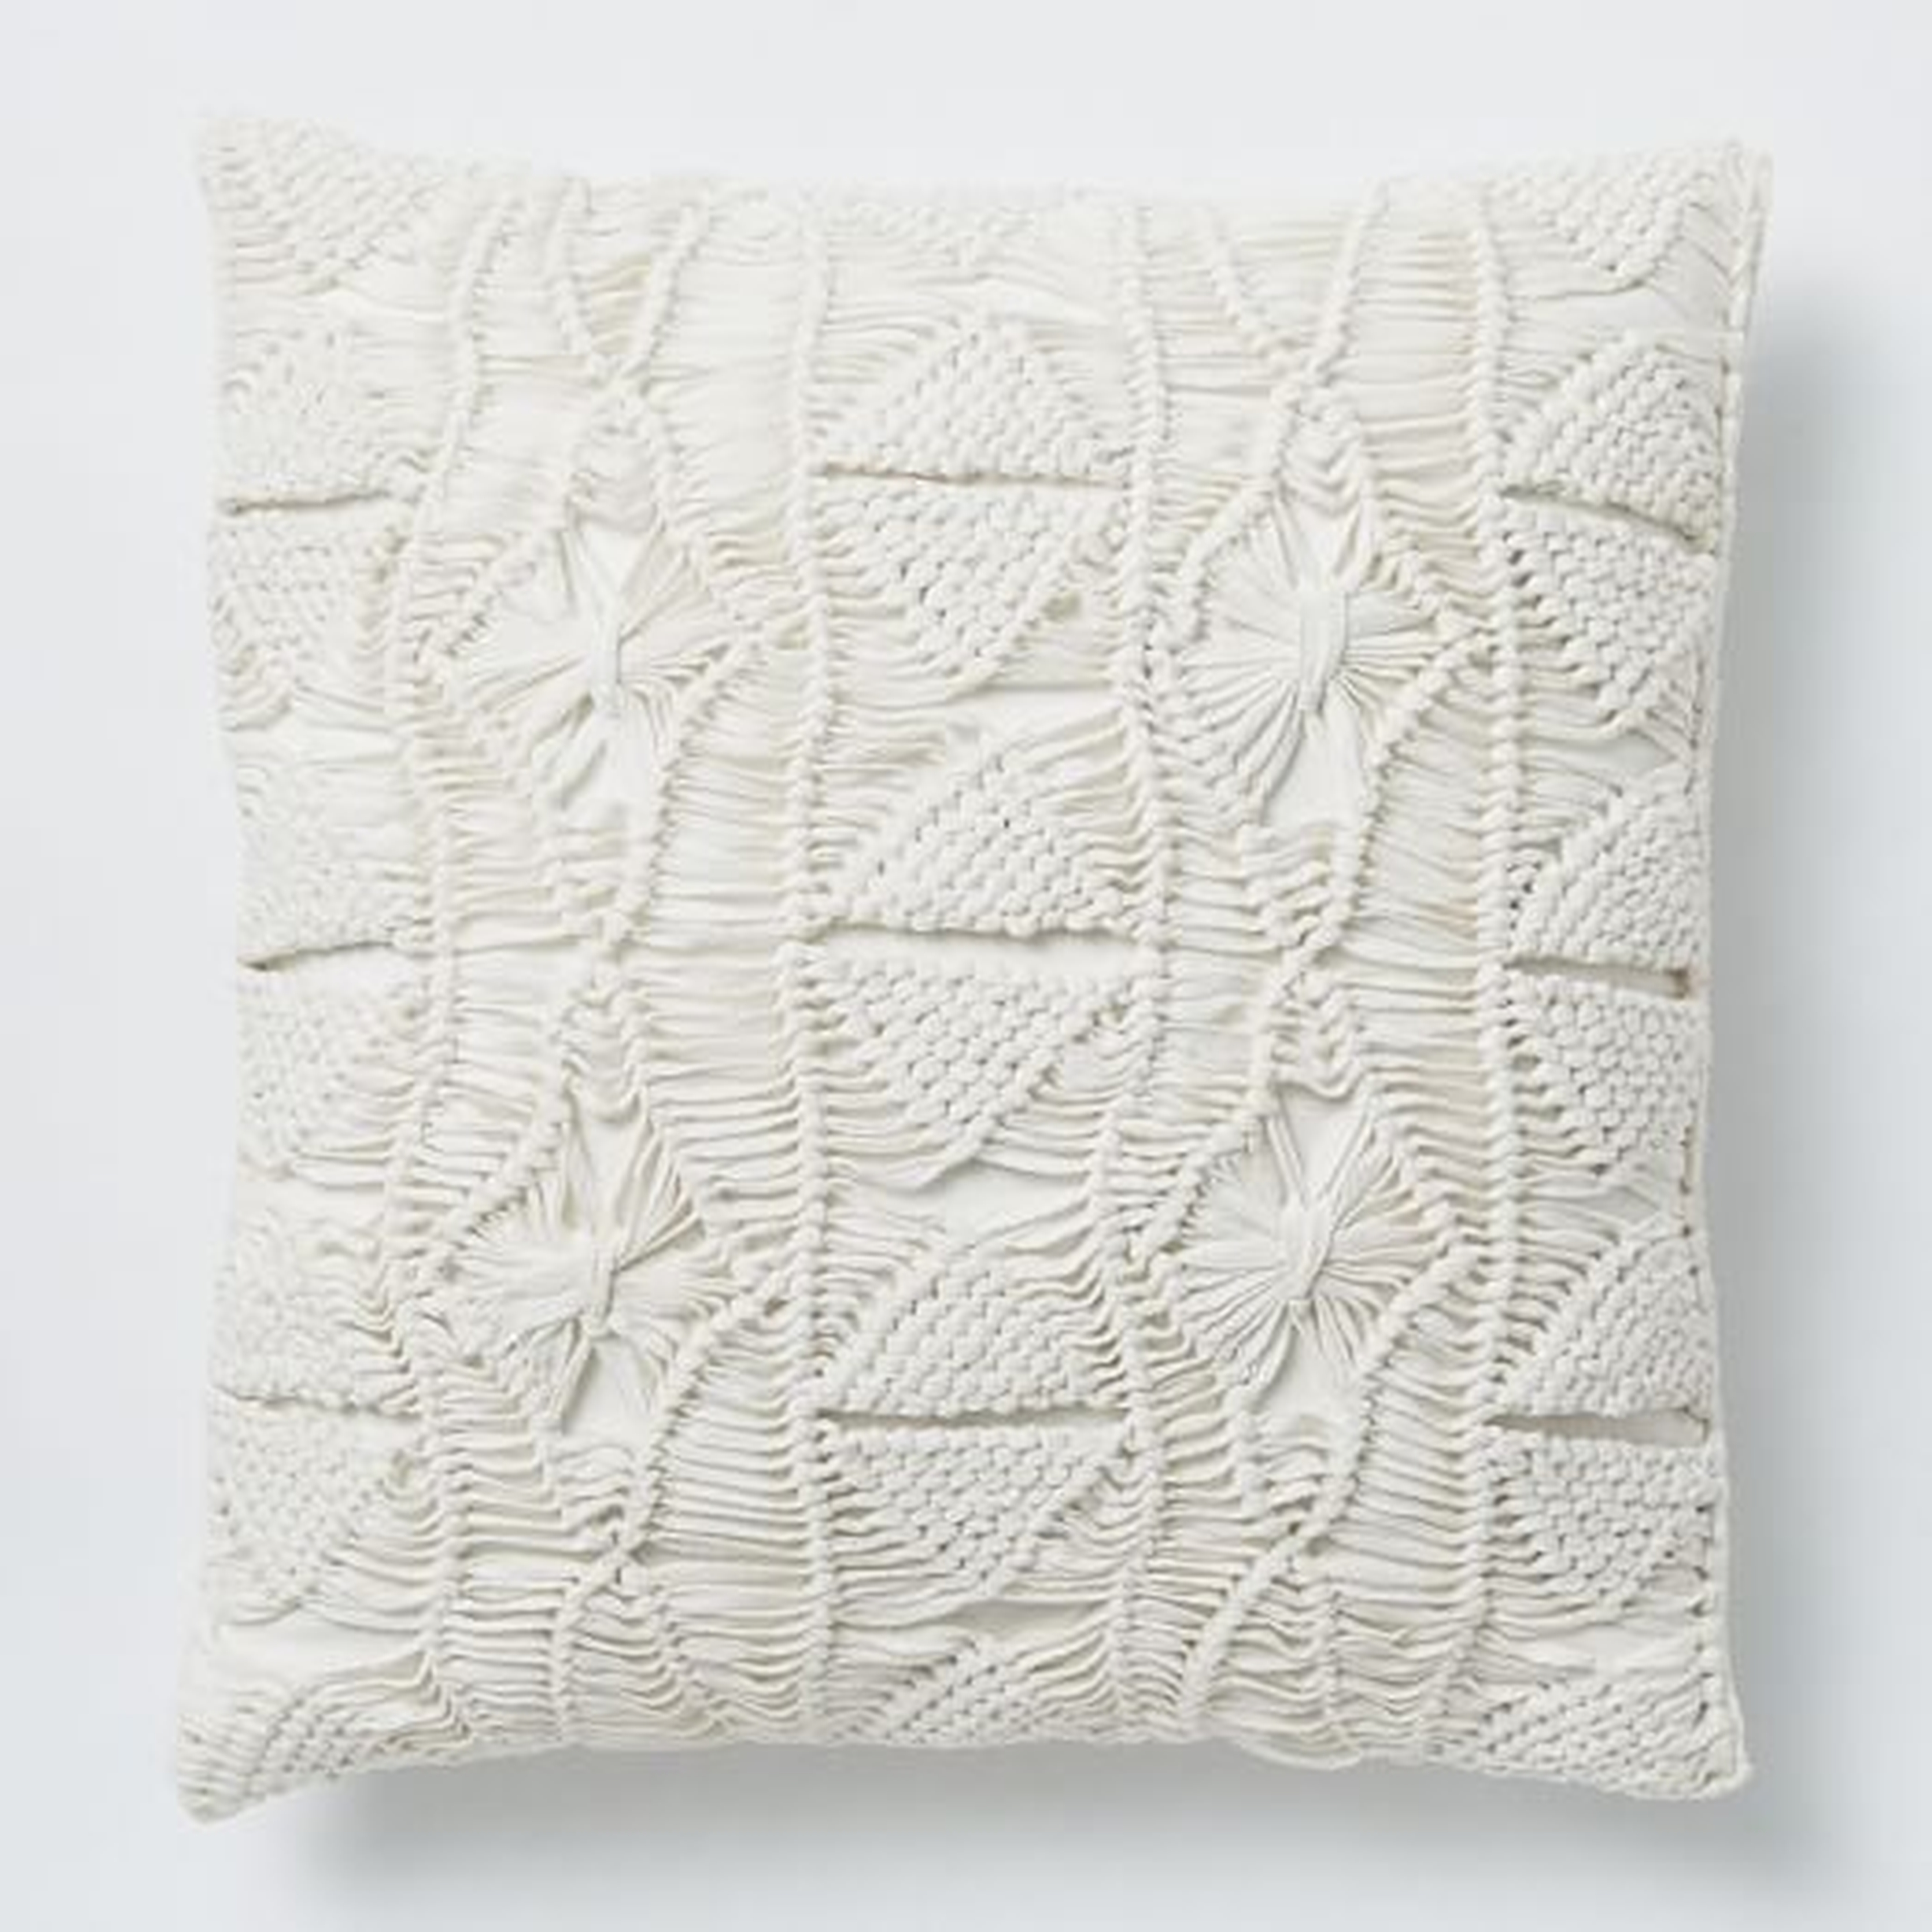 Macrame Diamond Pillow Cover, 16"X16", Stone White - West Elm